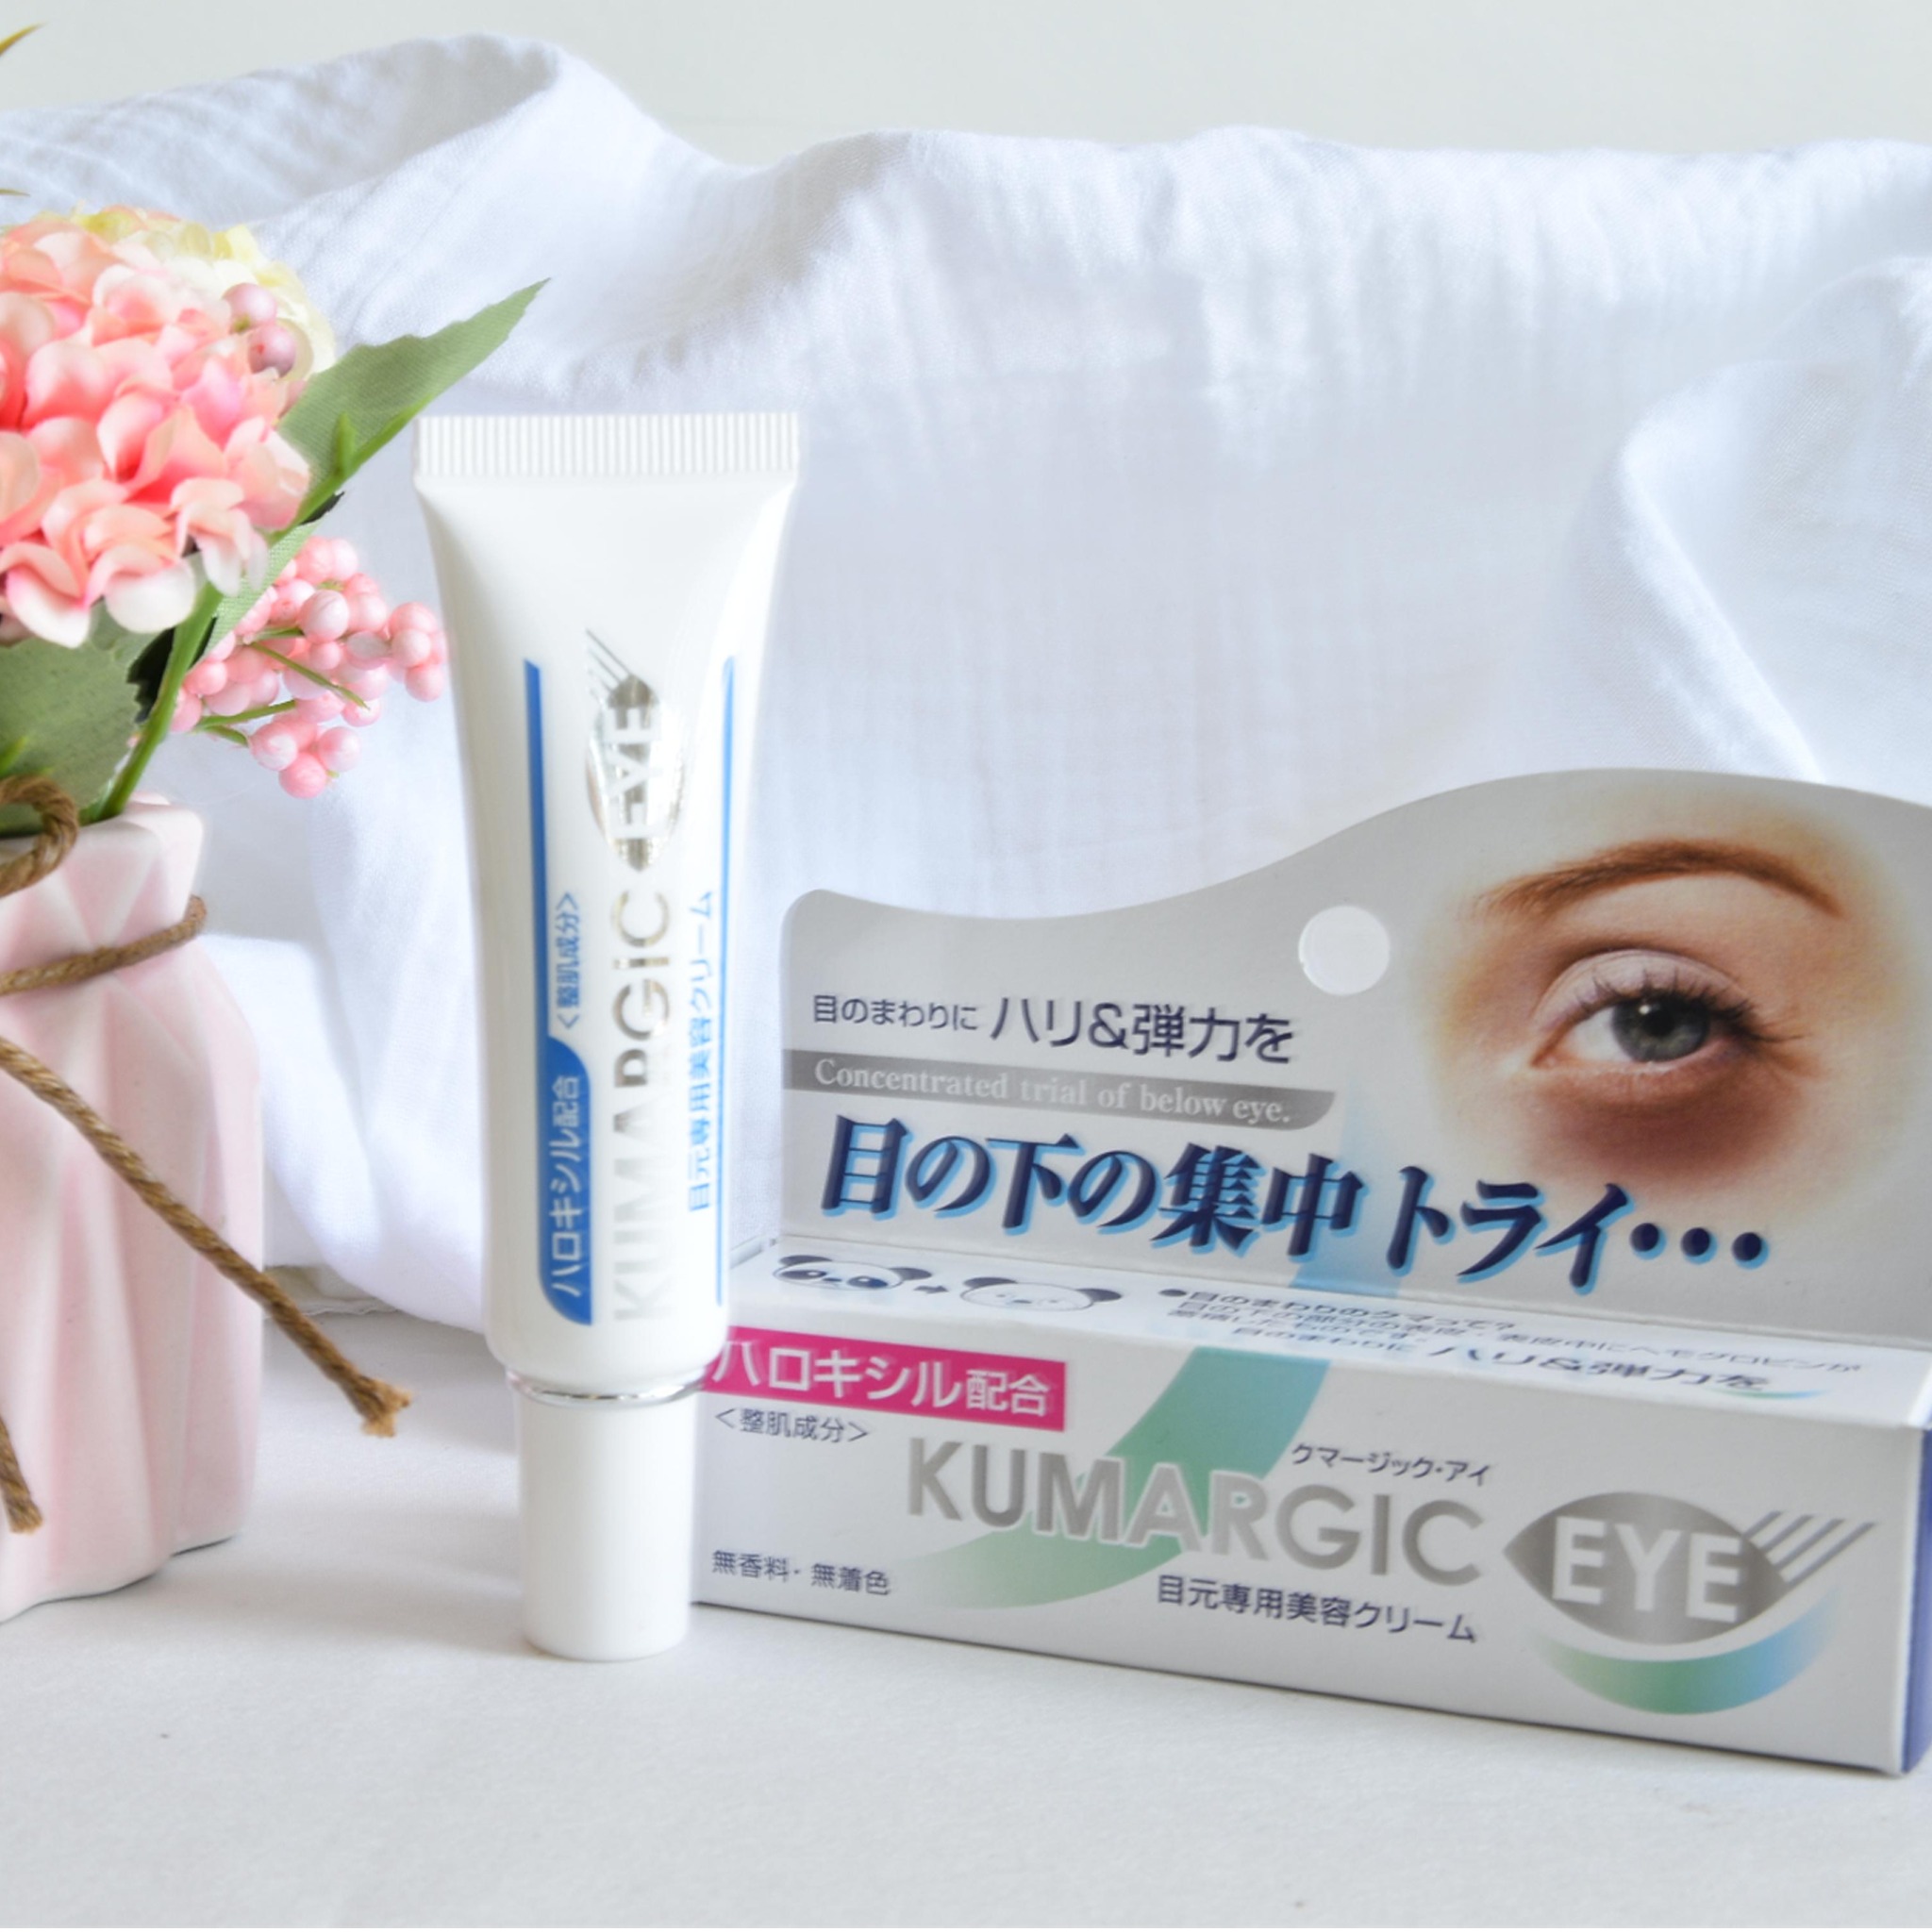 Kem trị thâm quầng mắt Kumargic Eye Cream nội địa Nhật Bản 2023